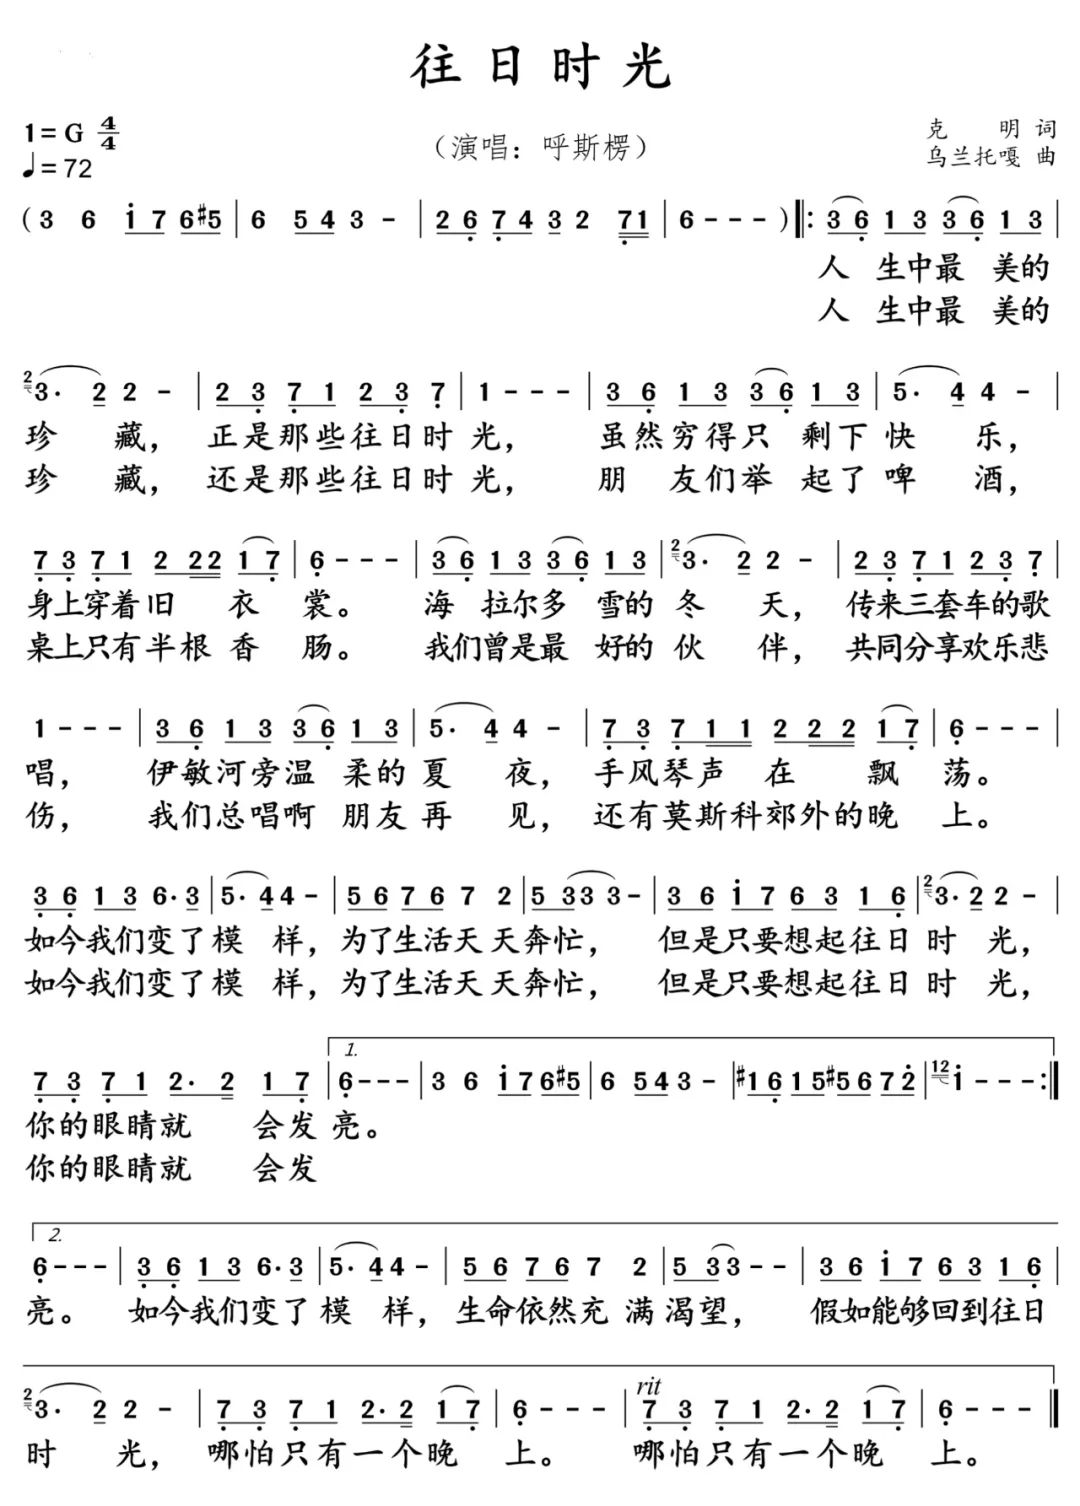 呼斯楞,廖昌永,谭维维三版《往日时光》,哪首最能打动